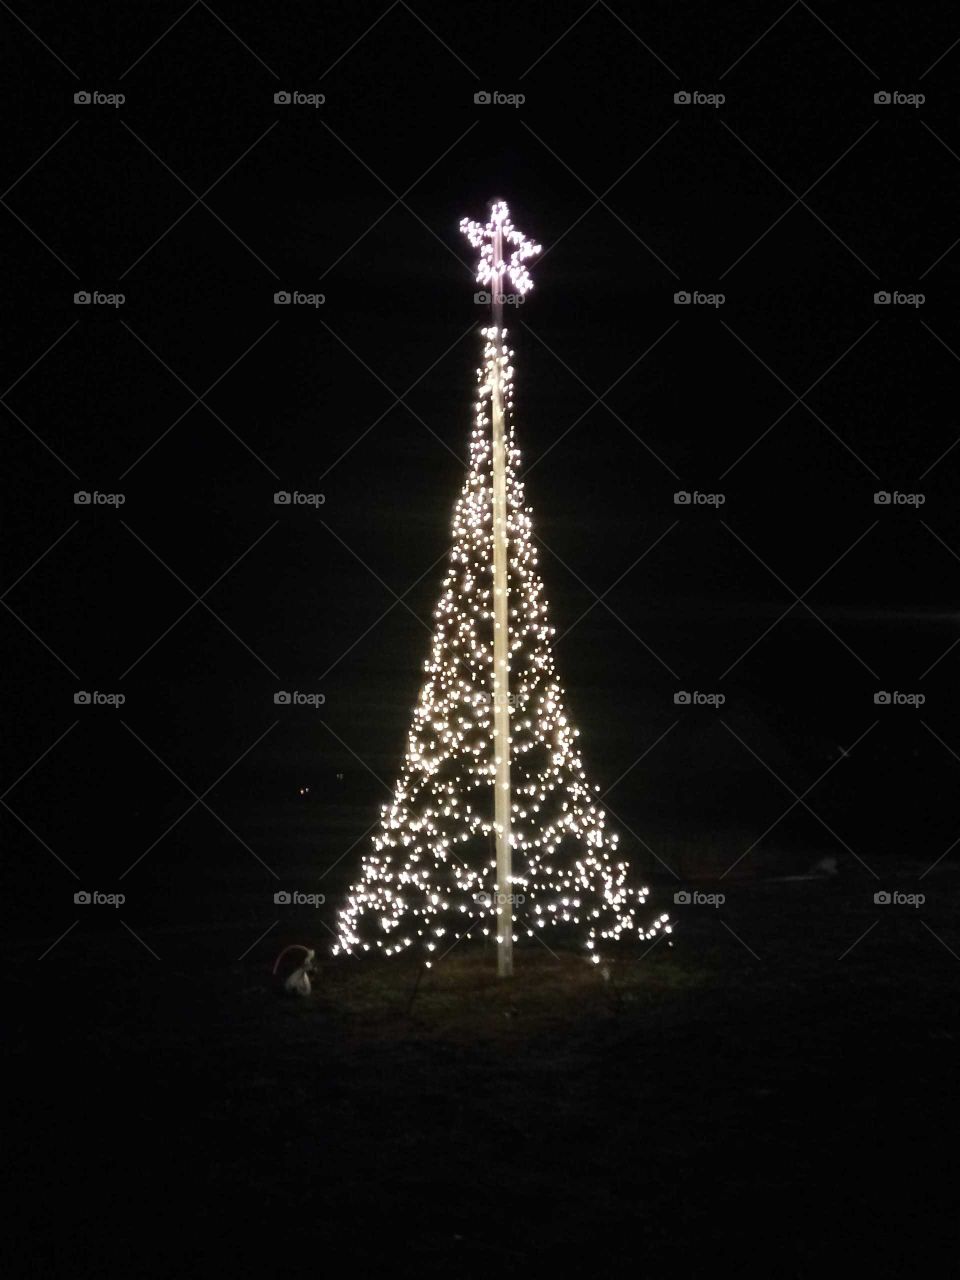 alle Jahre wieder,gibt es verschiedene Weihnachtsbäume,die moderne Variante ist nur Lichter in Form eines Baumes